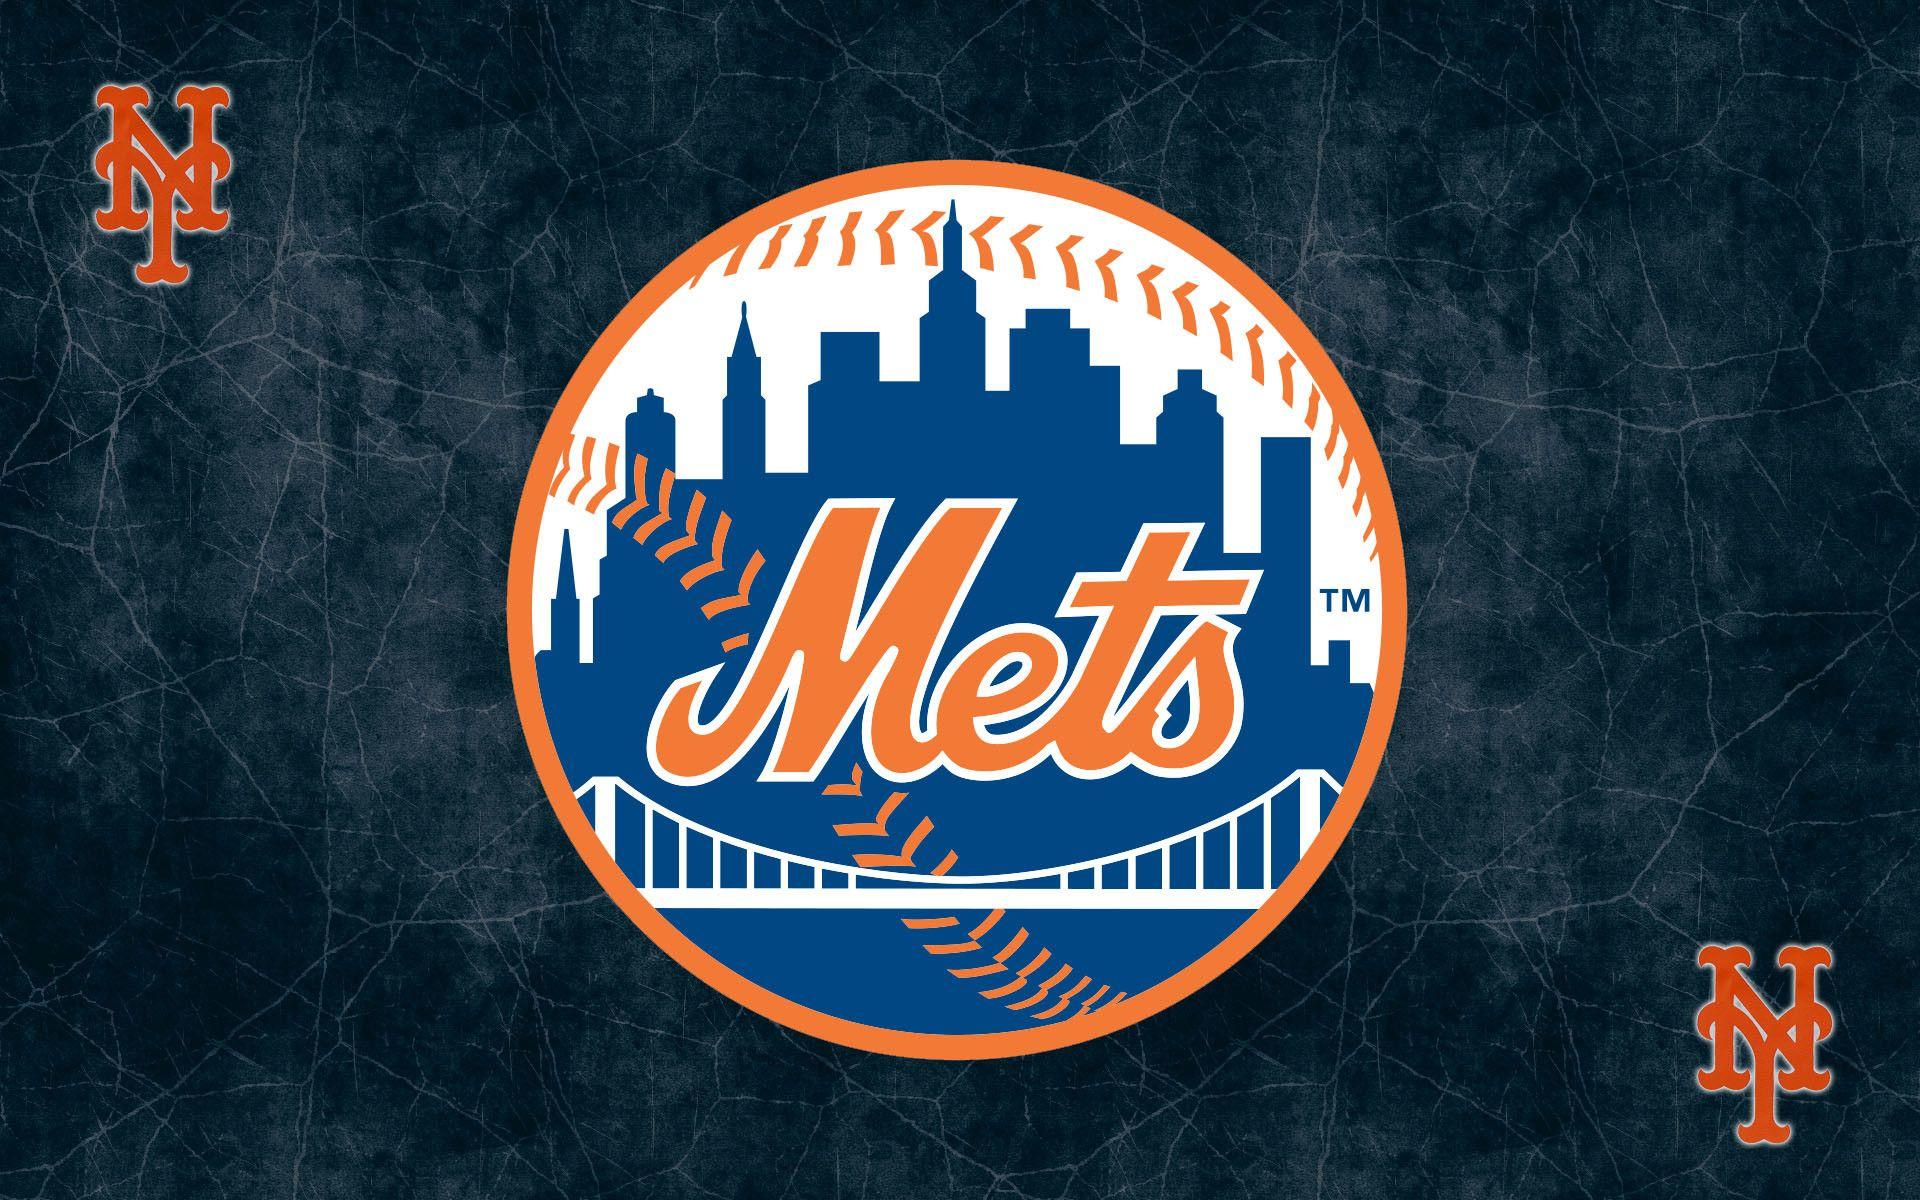 New York Mets Wallpaper